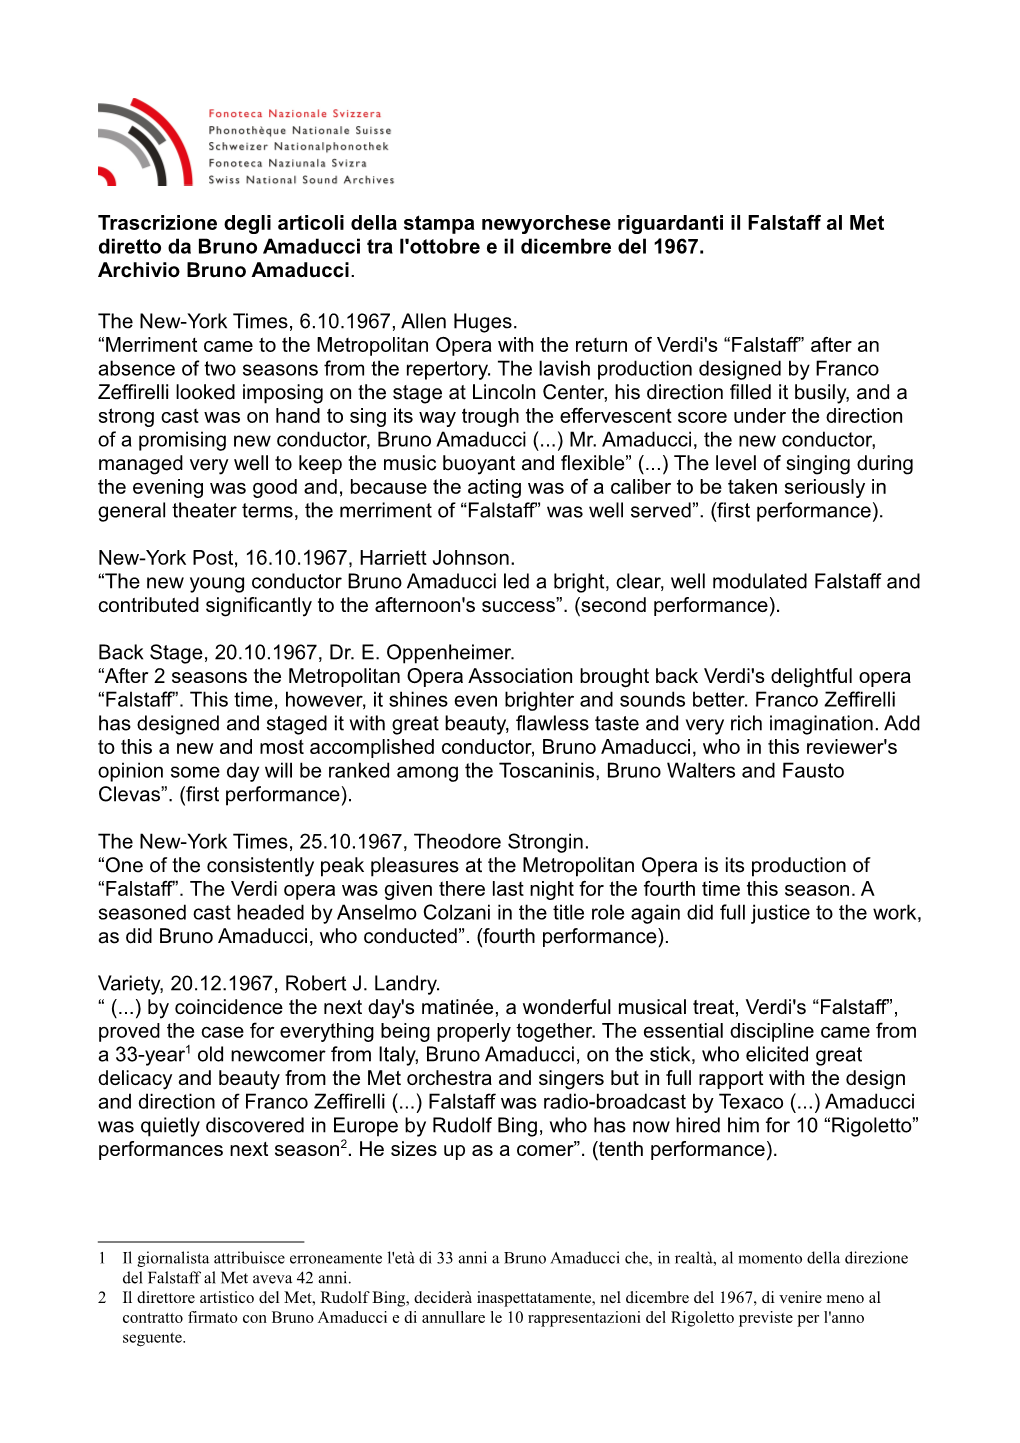 Trascrizione Degli Articoli Della Stampa Newyorchese Riguardanti Il Falstaff Al Met Diretto Da Bruno Amaducci Tra L'ottobre E Il Dicembre Del 1967